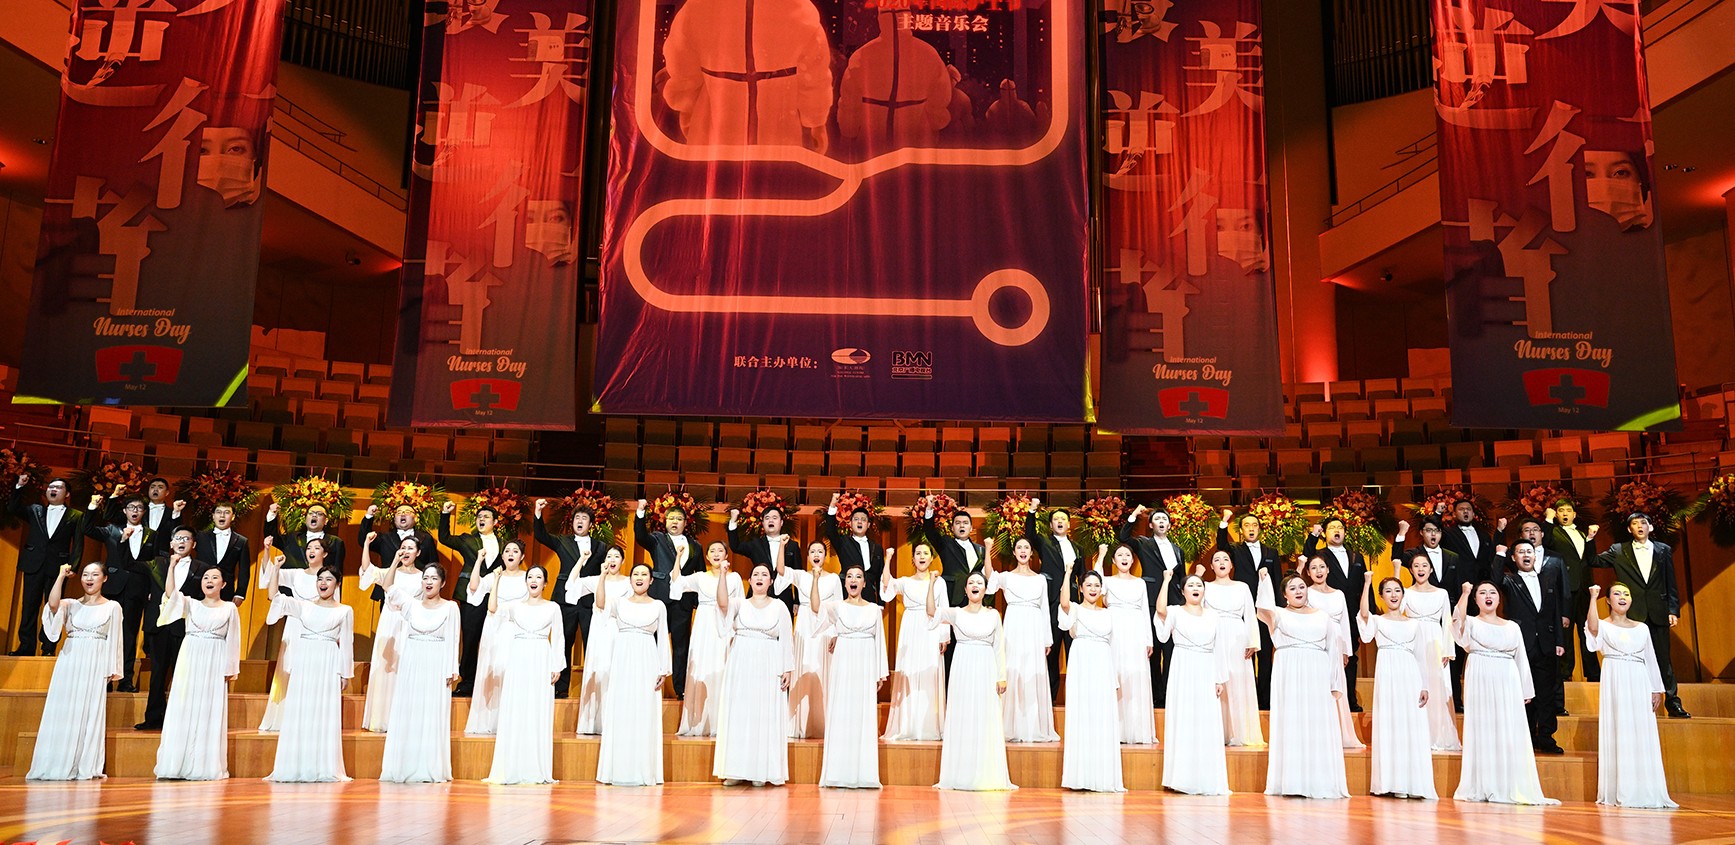 护士节主题音乐会排练-国家大剧院合唱团-摄影刘方 (2) (1)_gaitubao_1735x845.jpg